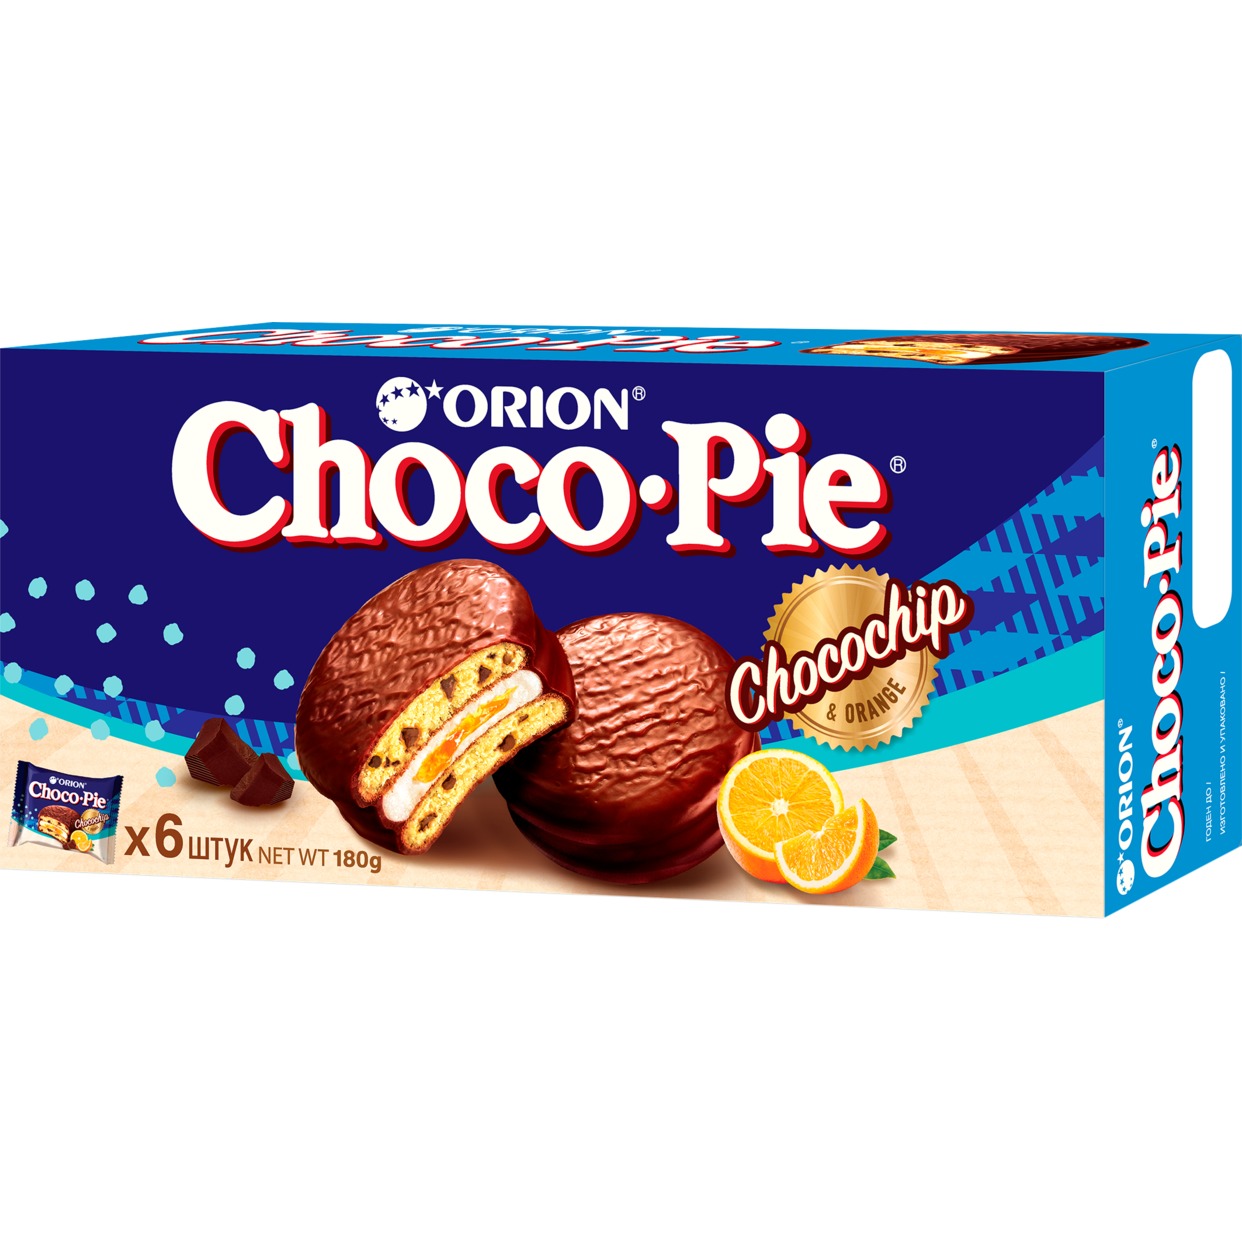 Мучное кондитерское изделие с кусочками шоколада в глазури «Choco Pie Chocochip» («Чоко Пай Чокочип»), 180 гр